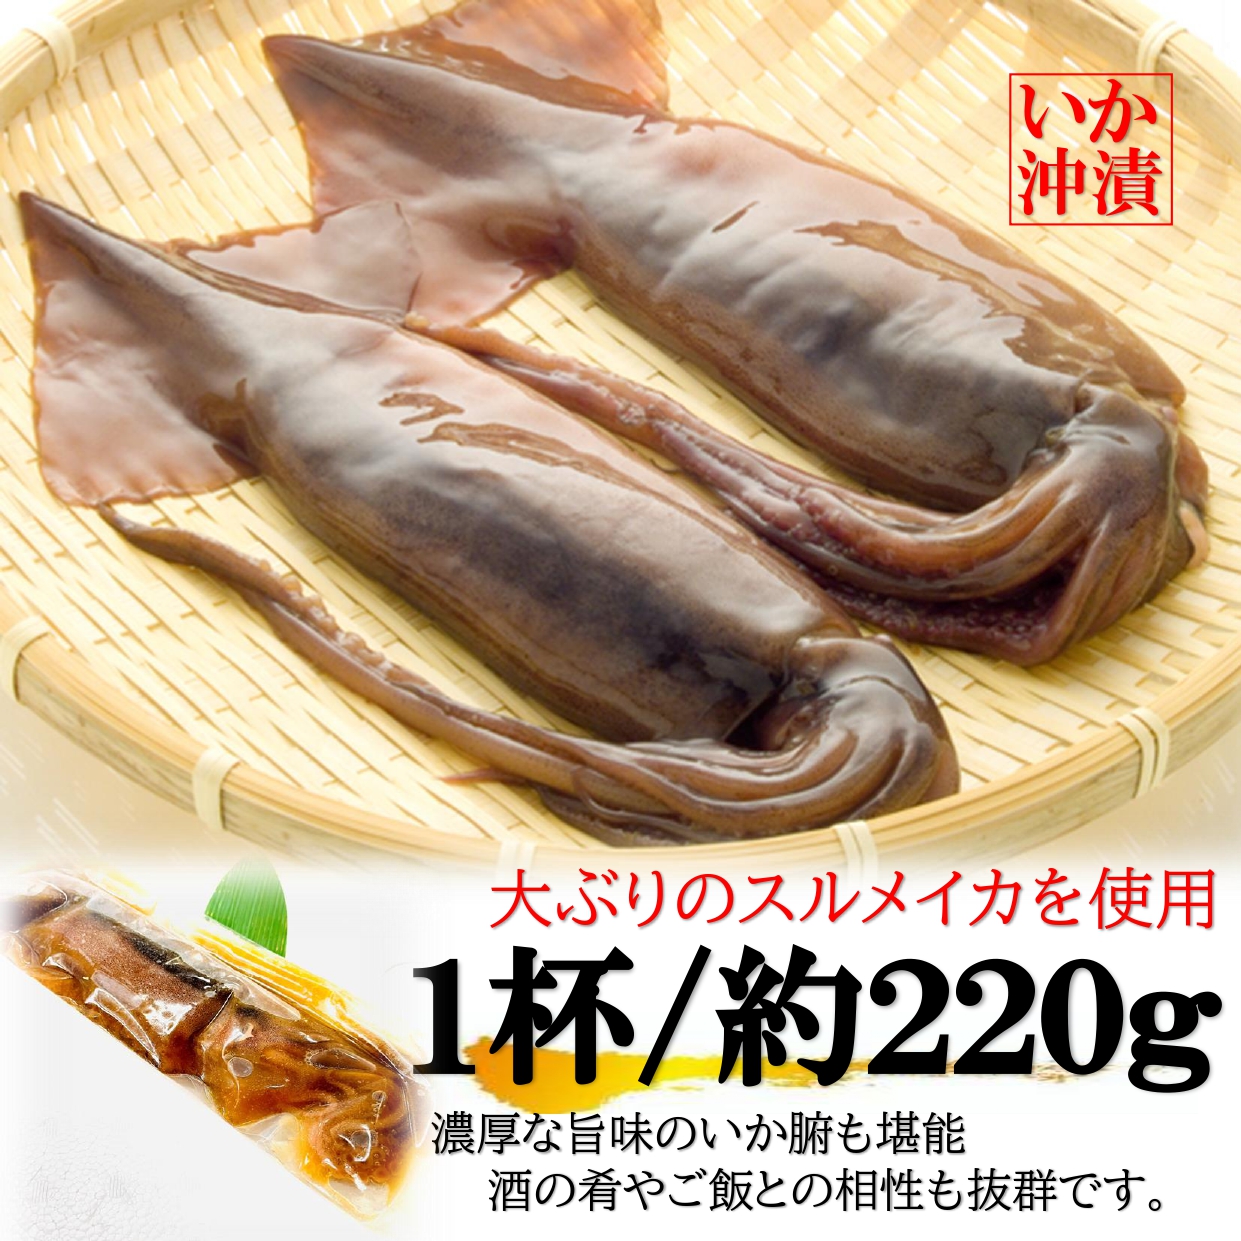  подлинный ..... 1 шт. 220g×2PC местного производства Hokkaido . включено большой .... круг .. Special производства соевый соус ...! тихоокеанский кальмар кальмар ... сушеный кальмар .. подлинный ..